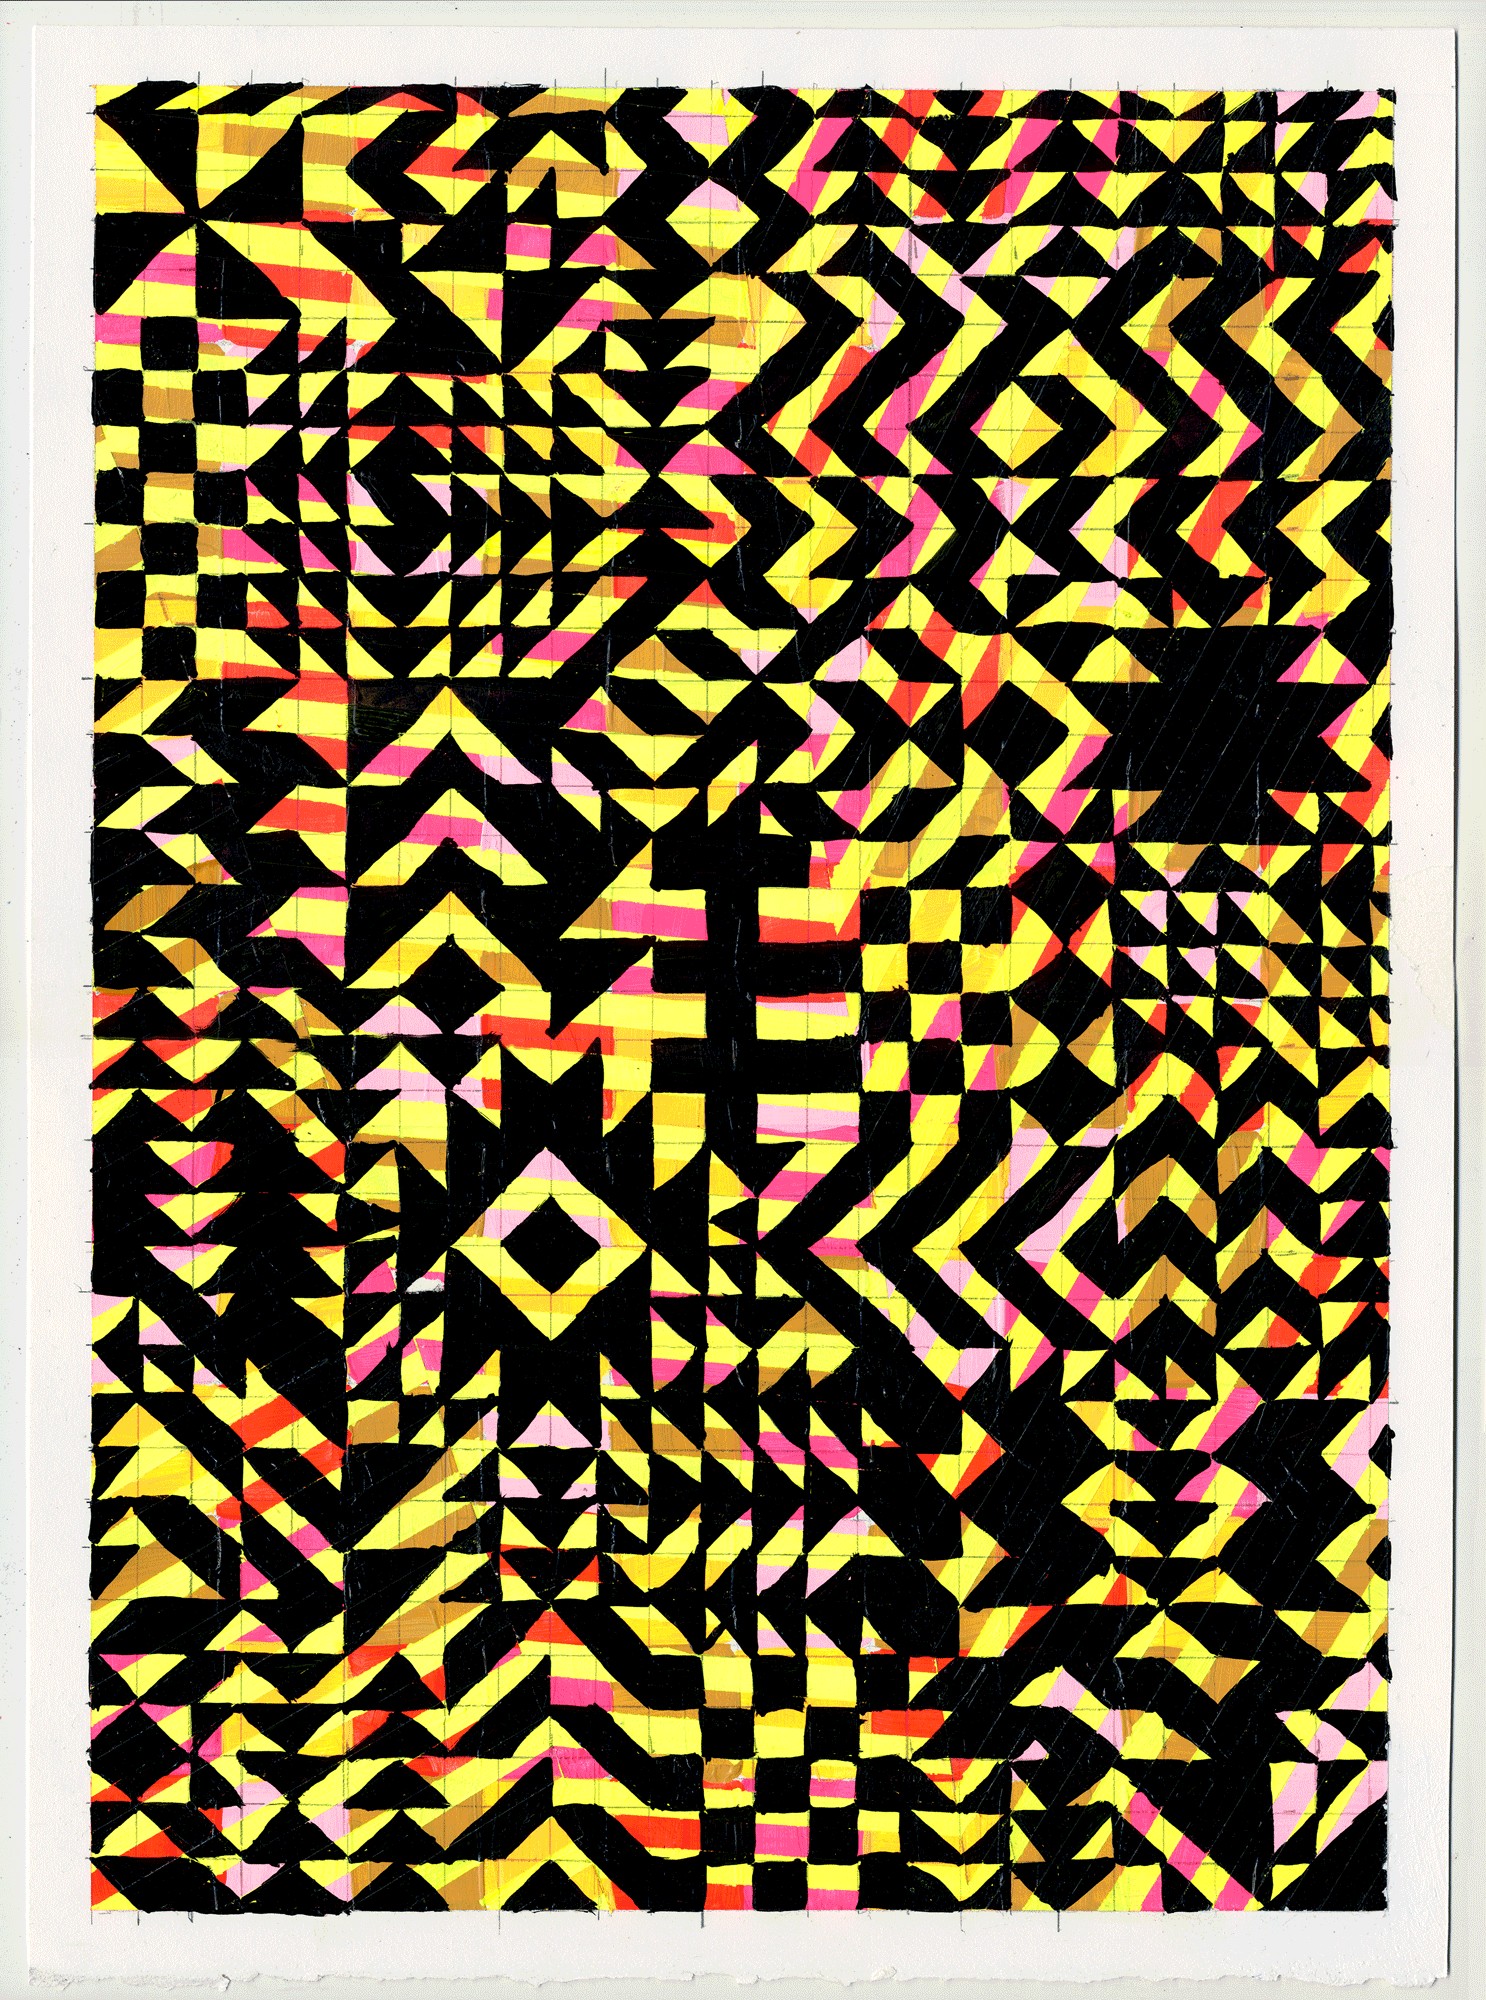  NY1711, 15" X 11", acrylic on paper, 2017 